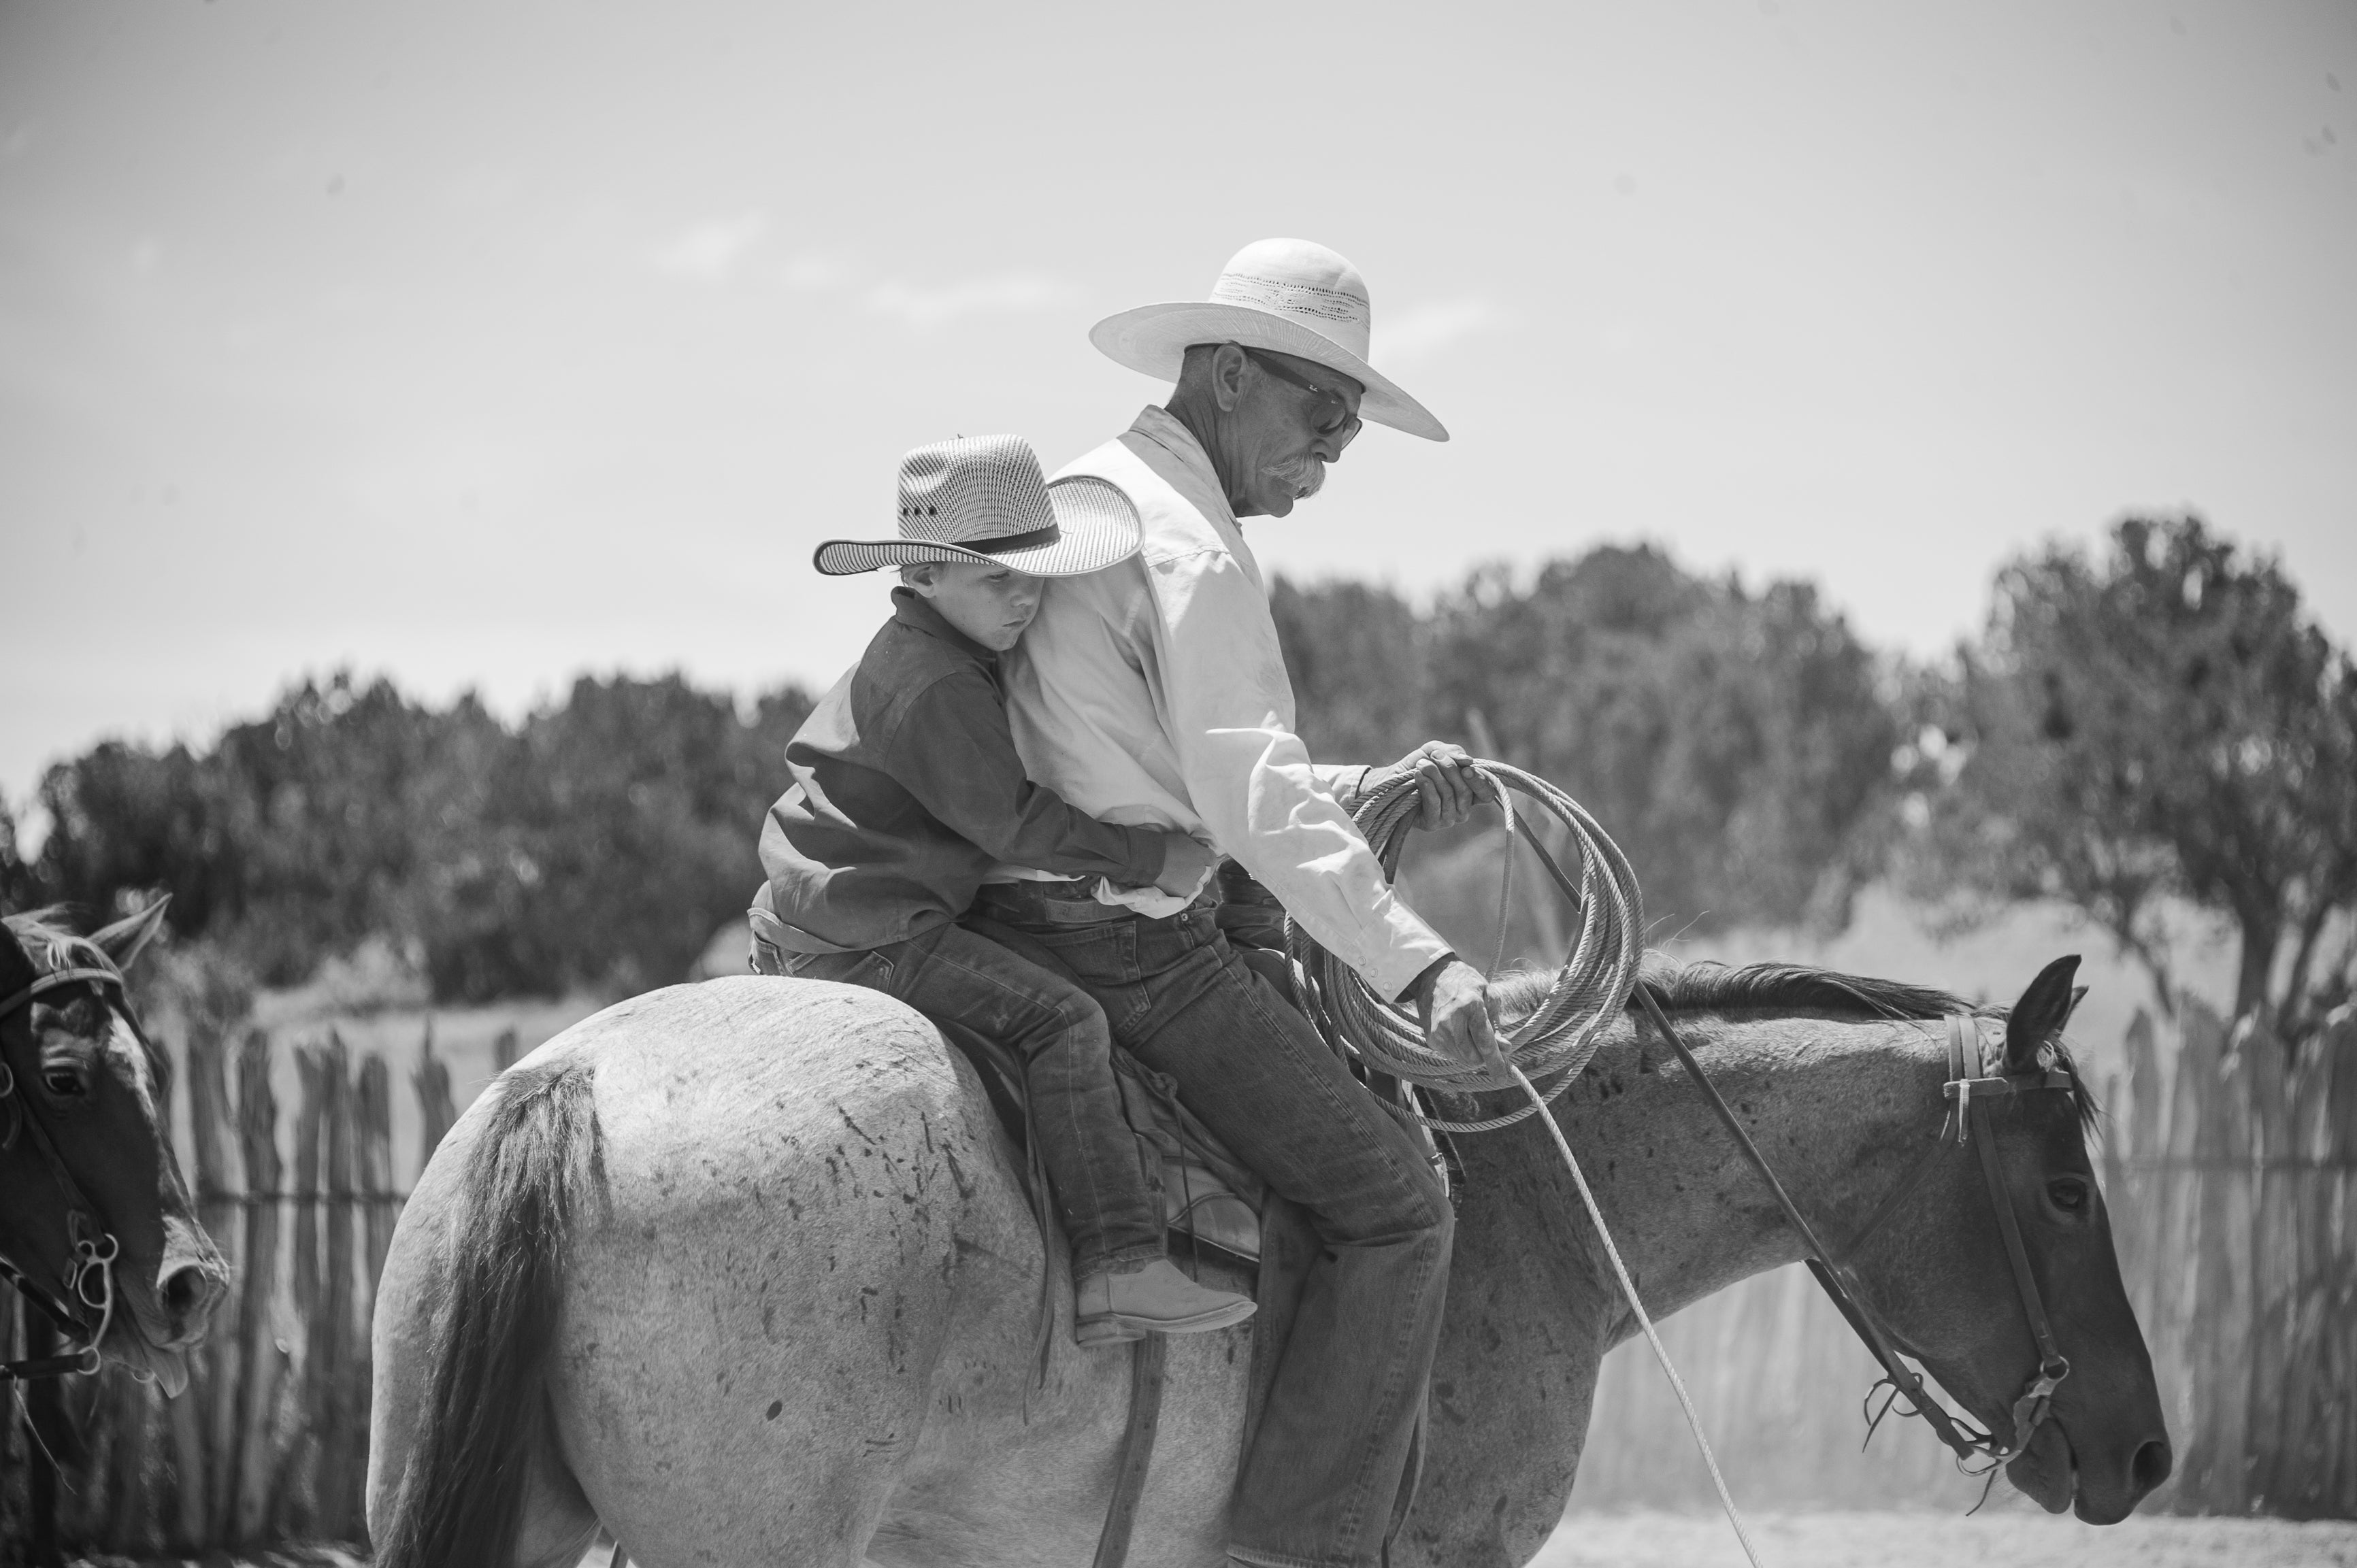 western cowboy hats